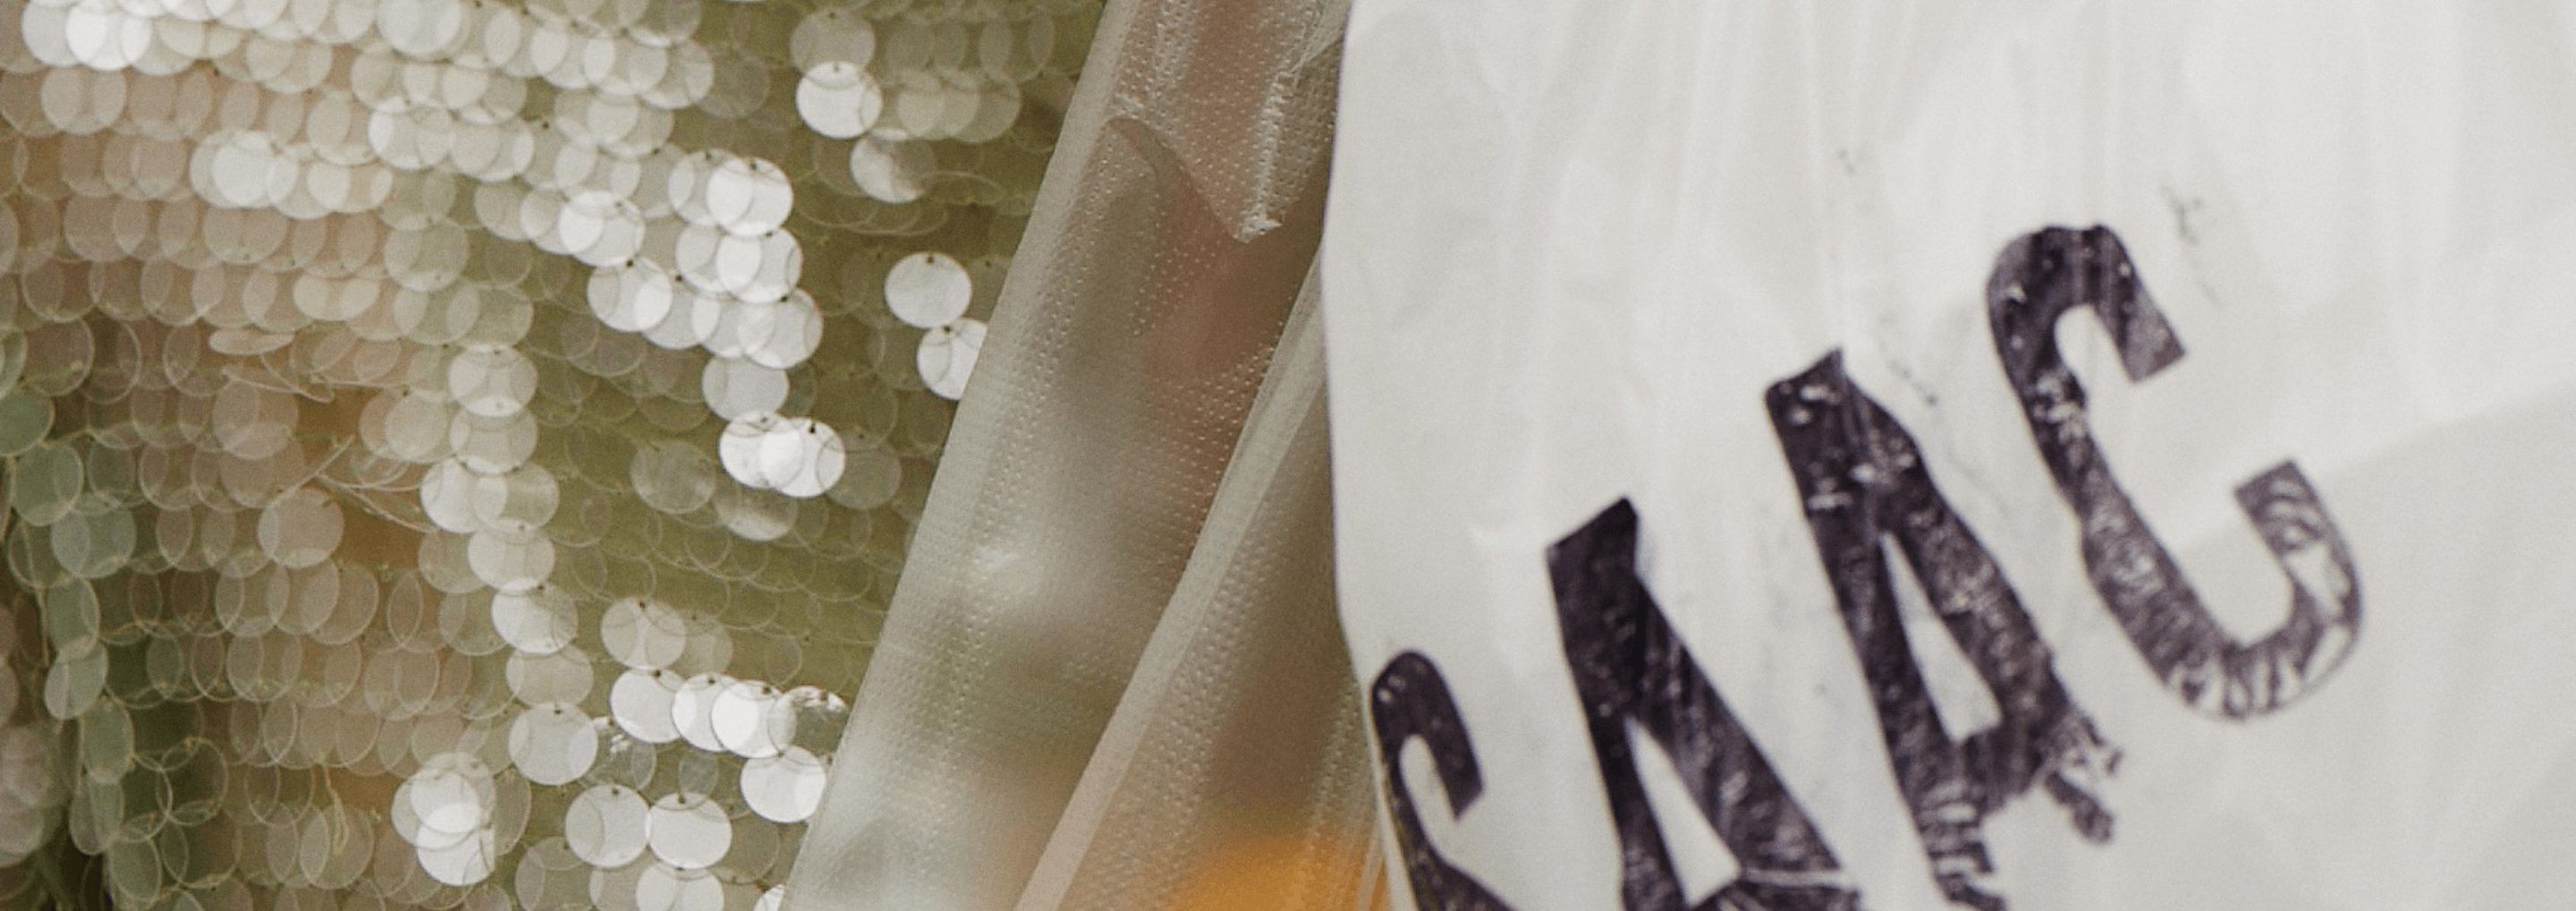 close up image of isaac mizrahi top and platic bag